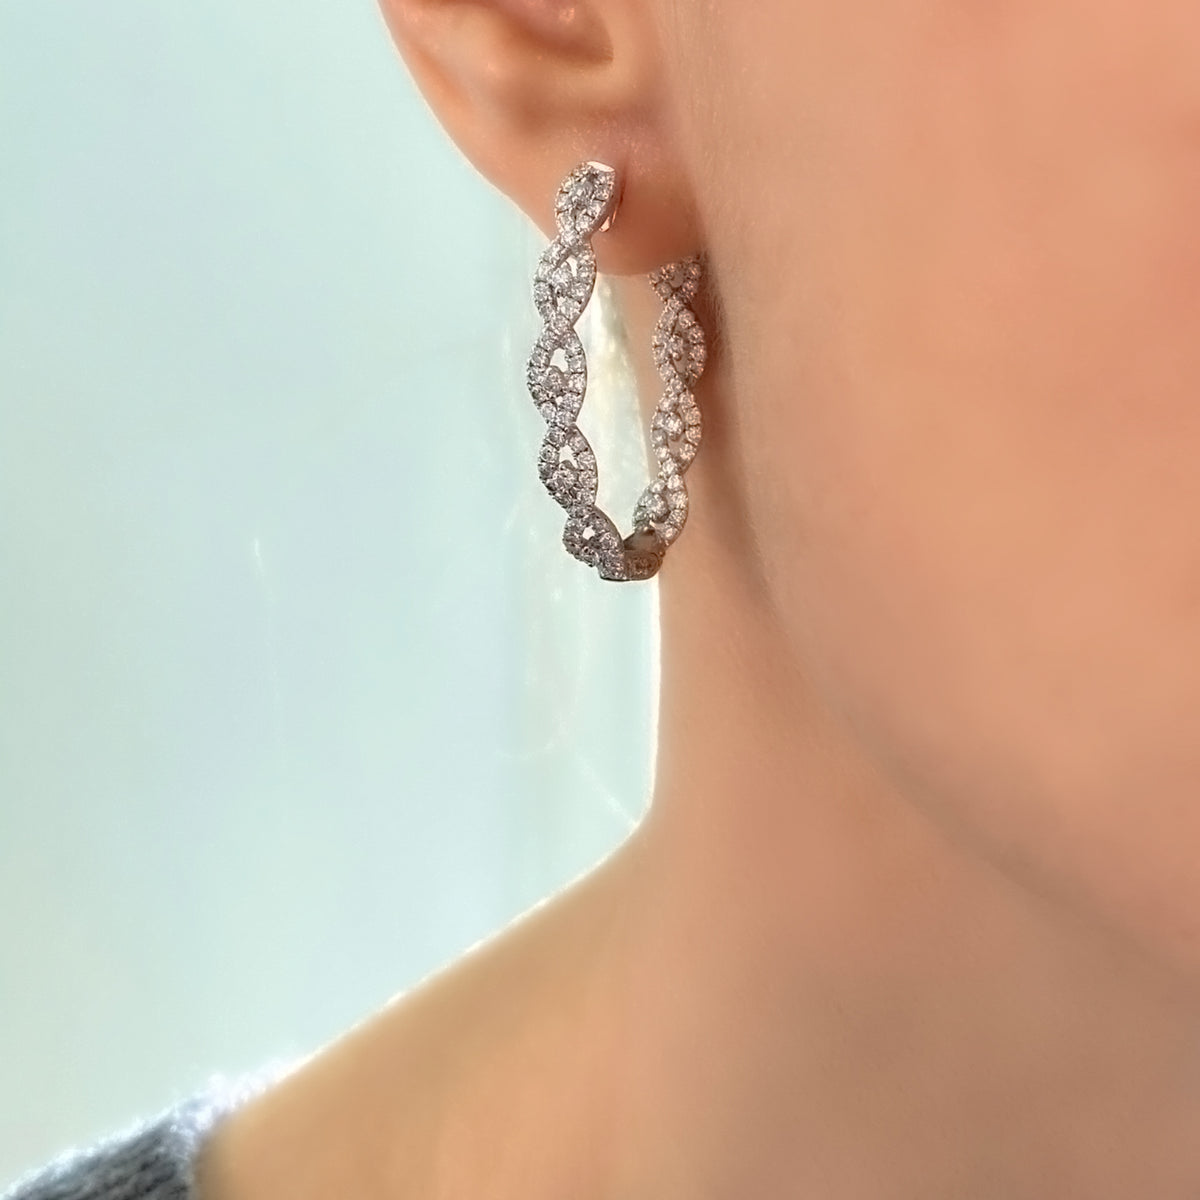 Intertwined Diamond Hoop Earrings in 18k White Gold